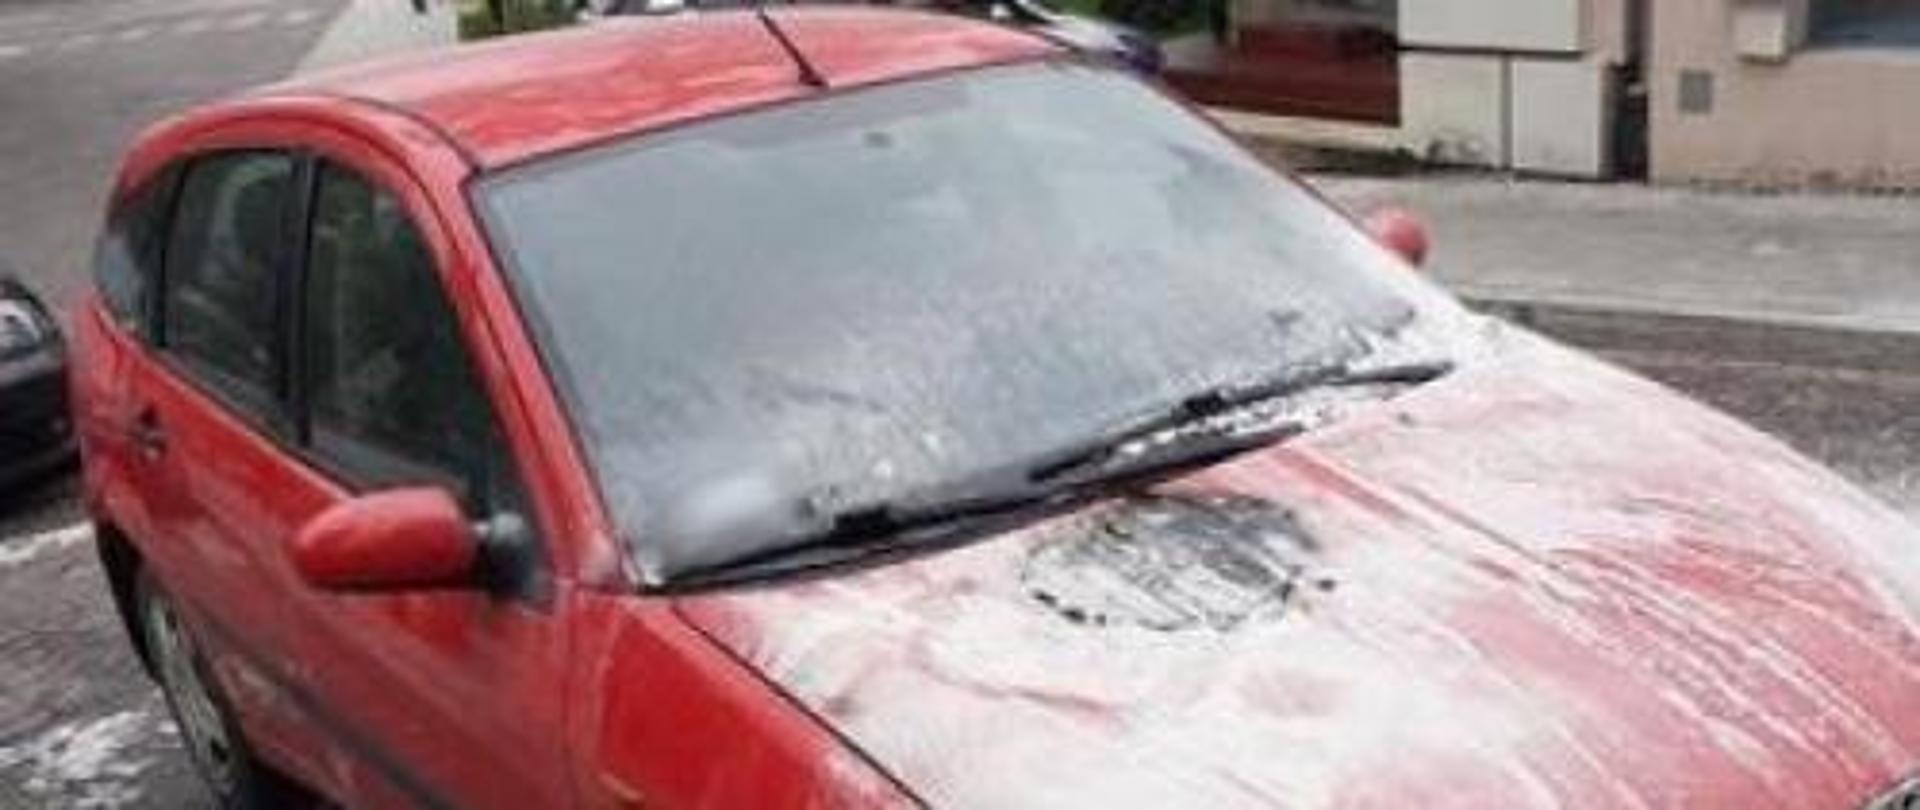 Samochód osobowy, koloru czerwonego z widocznymi nadpalonymi elementami karoserii po ugaszeniu